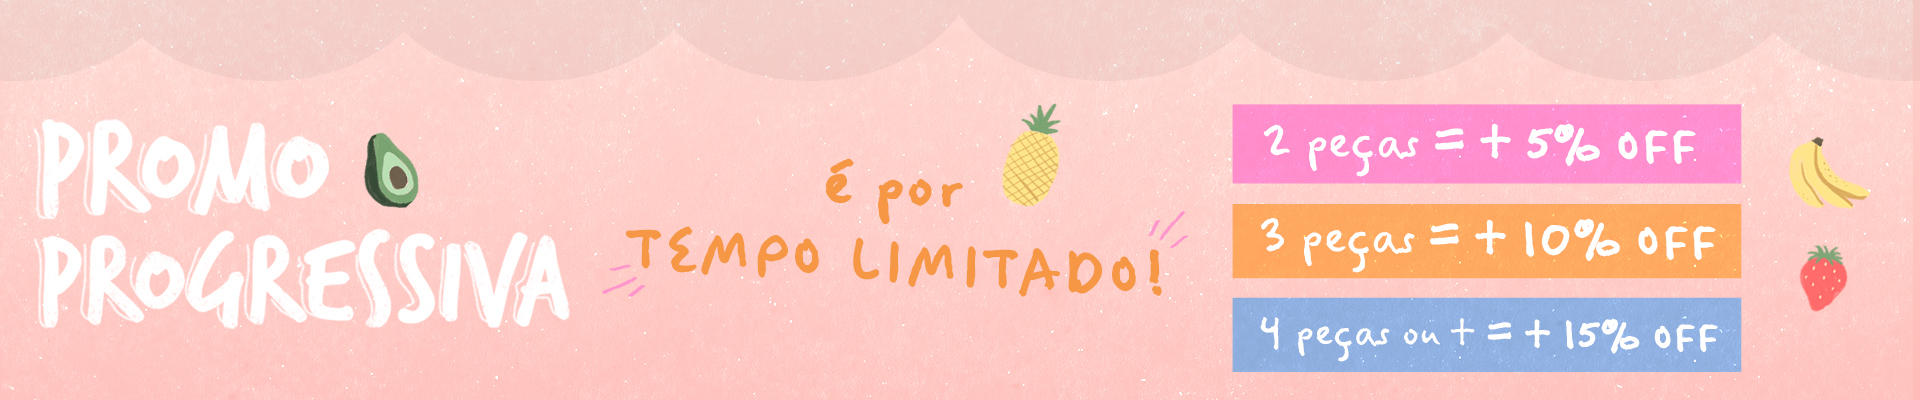 Banner Promo de Verão - desktop